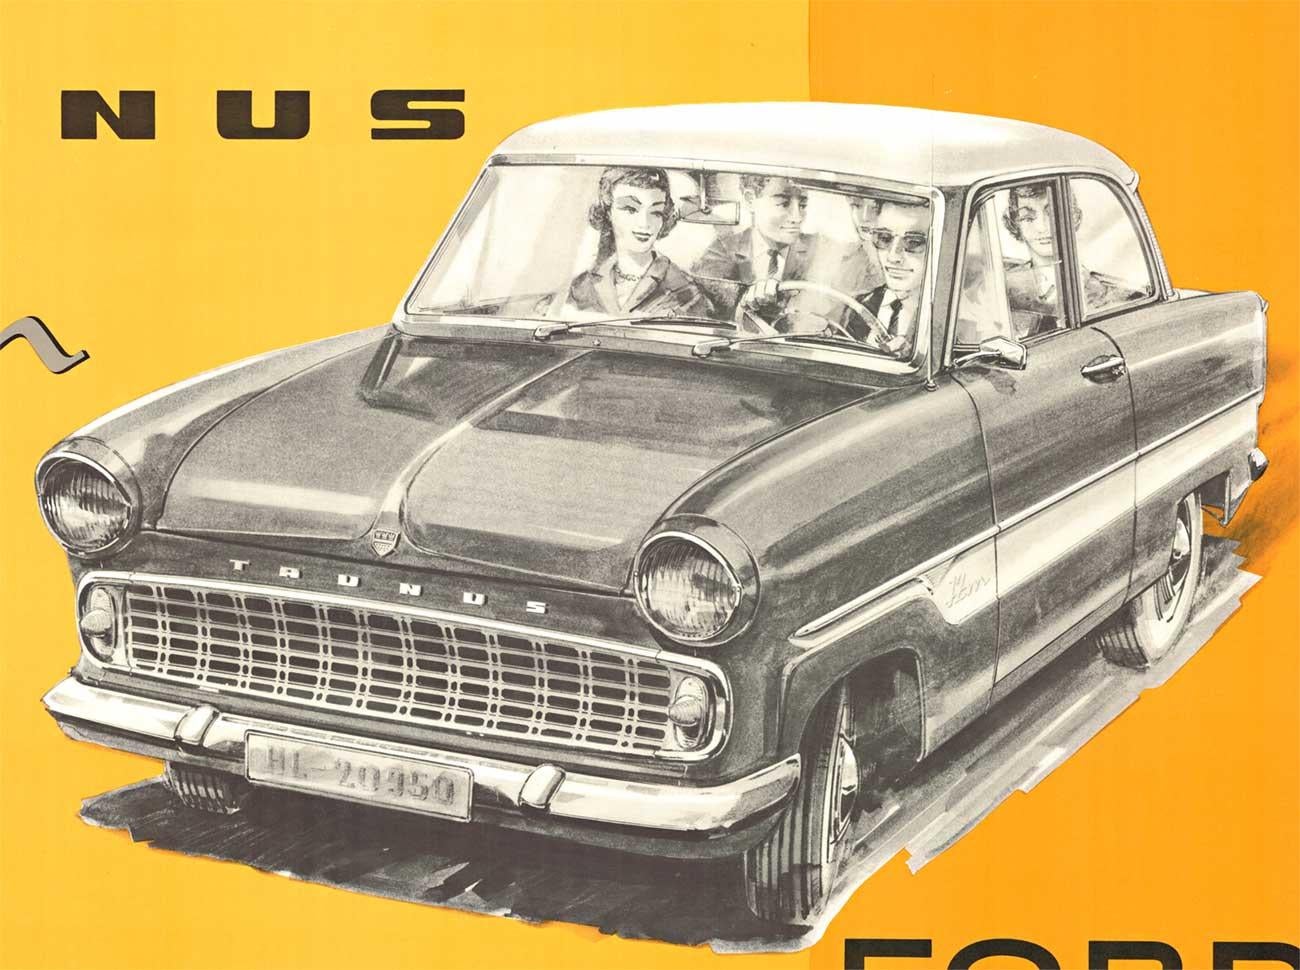 Original Ford of Germany, The All New Taunus 12M Super vintage German antique poster.  Les photos sont en excellent état et prêtes à être encadrées. Nous n'avons pas été en mesure de localiser d'autres documents de cette affiche.

La Taunus 12M,